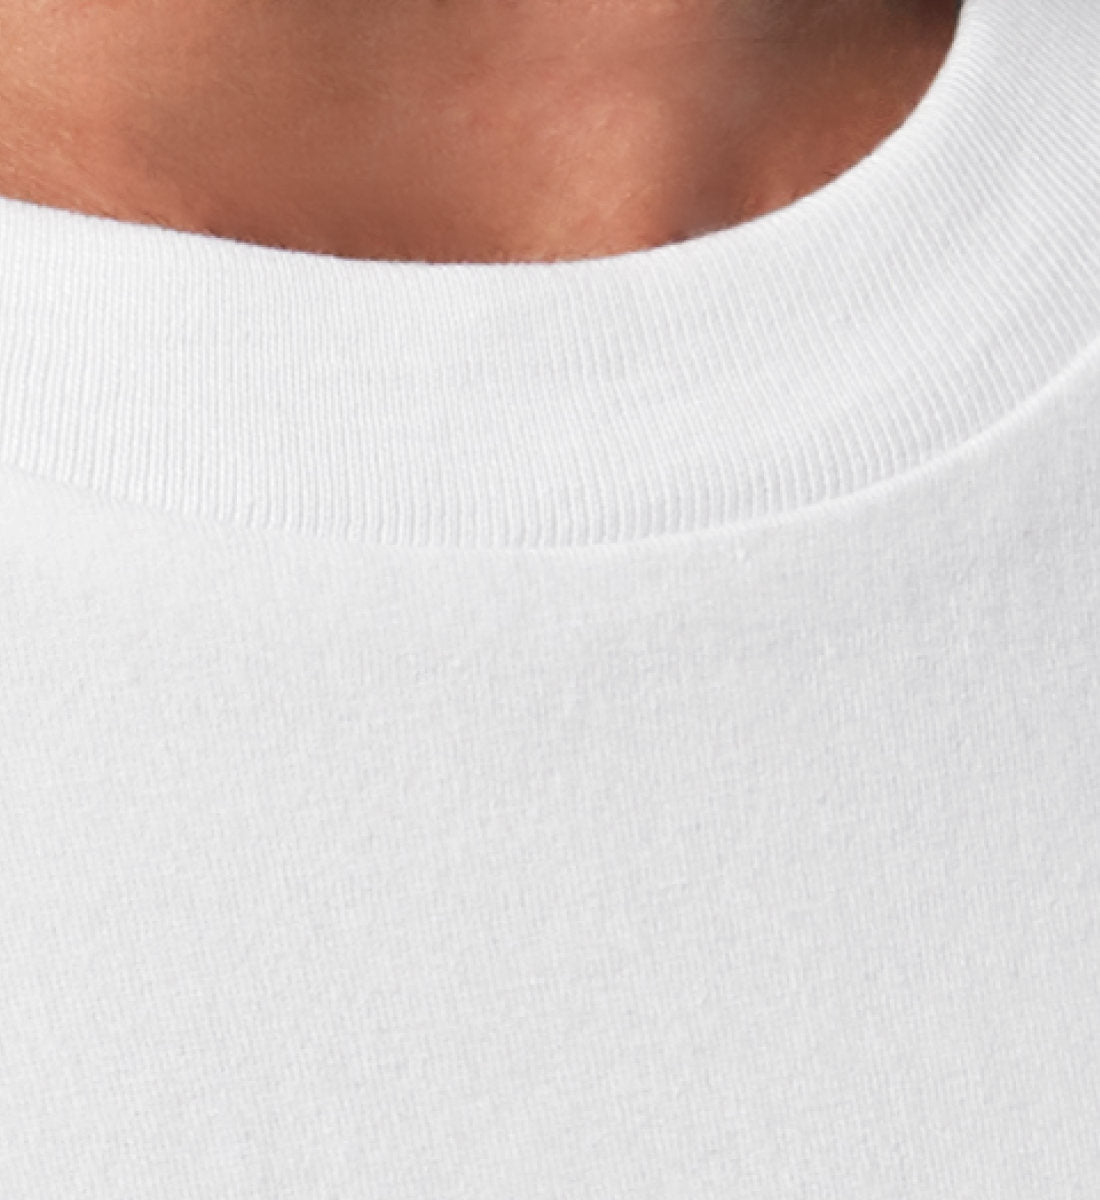 Weißes T-Shirt Unisex Relaxed Fit für Frauen und Männer bedruckt mit dem Design der Roger Rockawoo Clothing Kollektion Guitar thank god for power chords